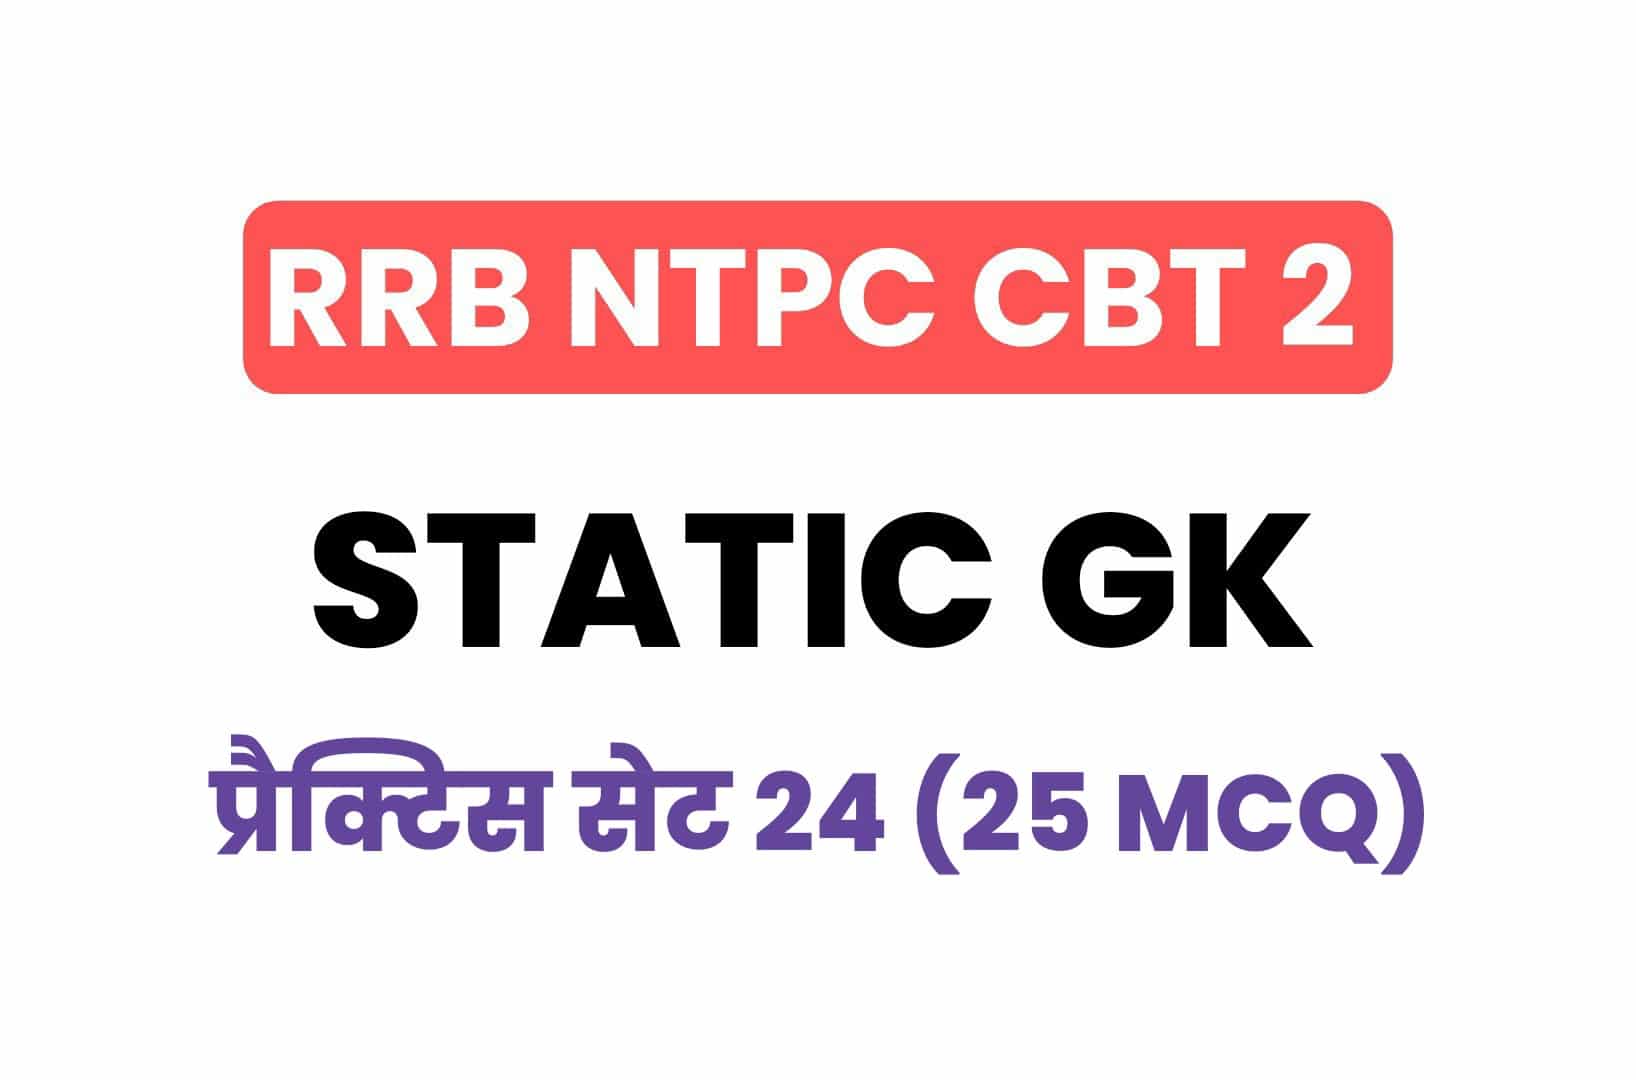 RRB NTPC CBT 2 Static GK प्रैक्टिस सेट 24: परीक्षा में पूछें जा रहे है ये प्रश्न, जरूर पढ़ें